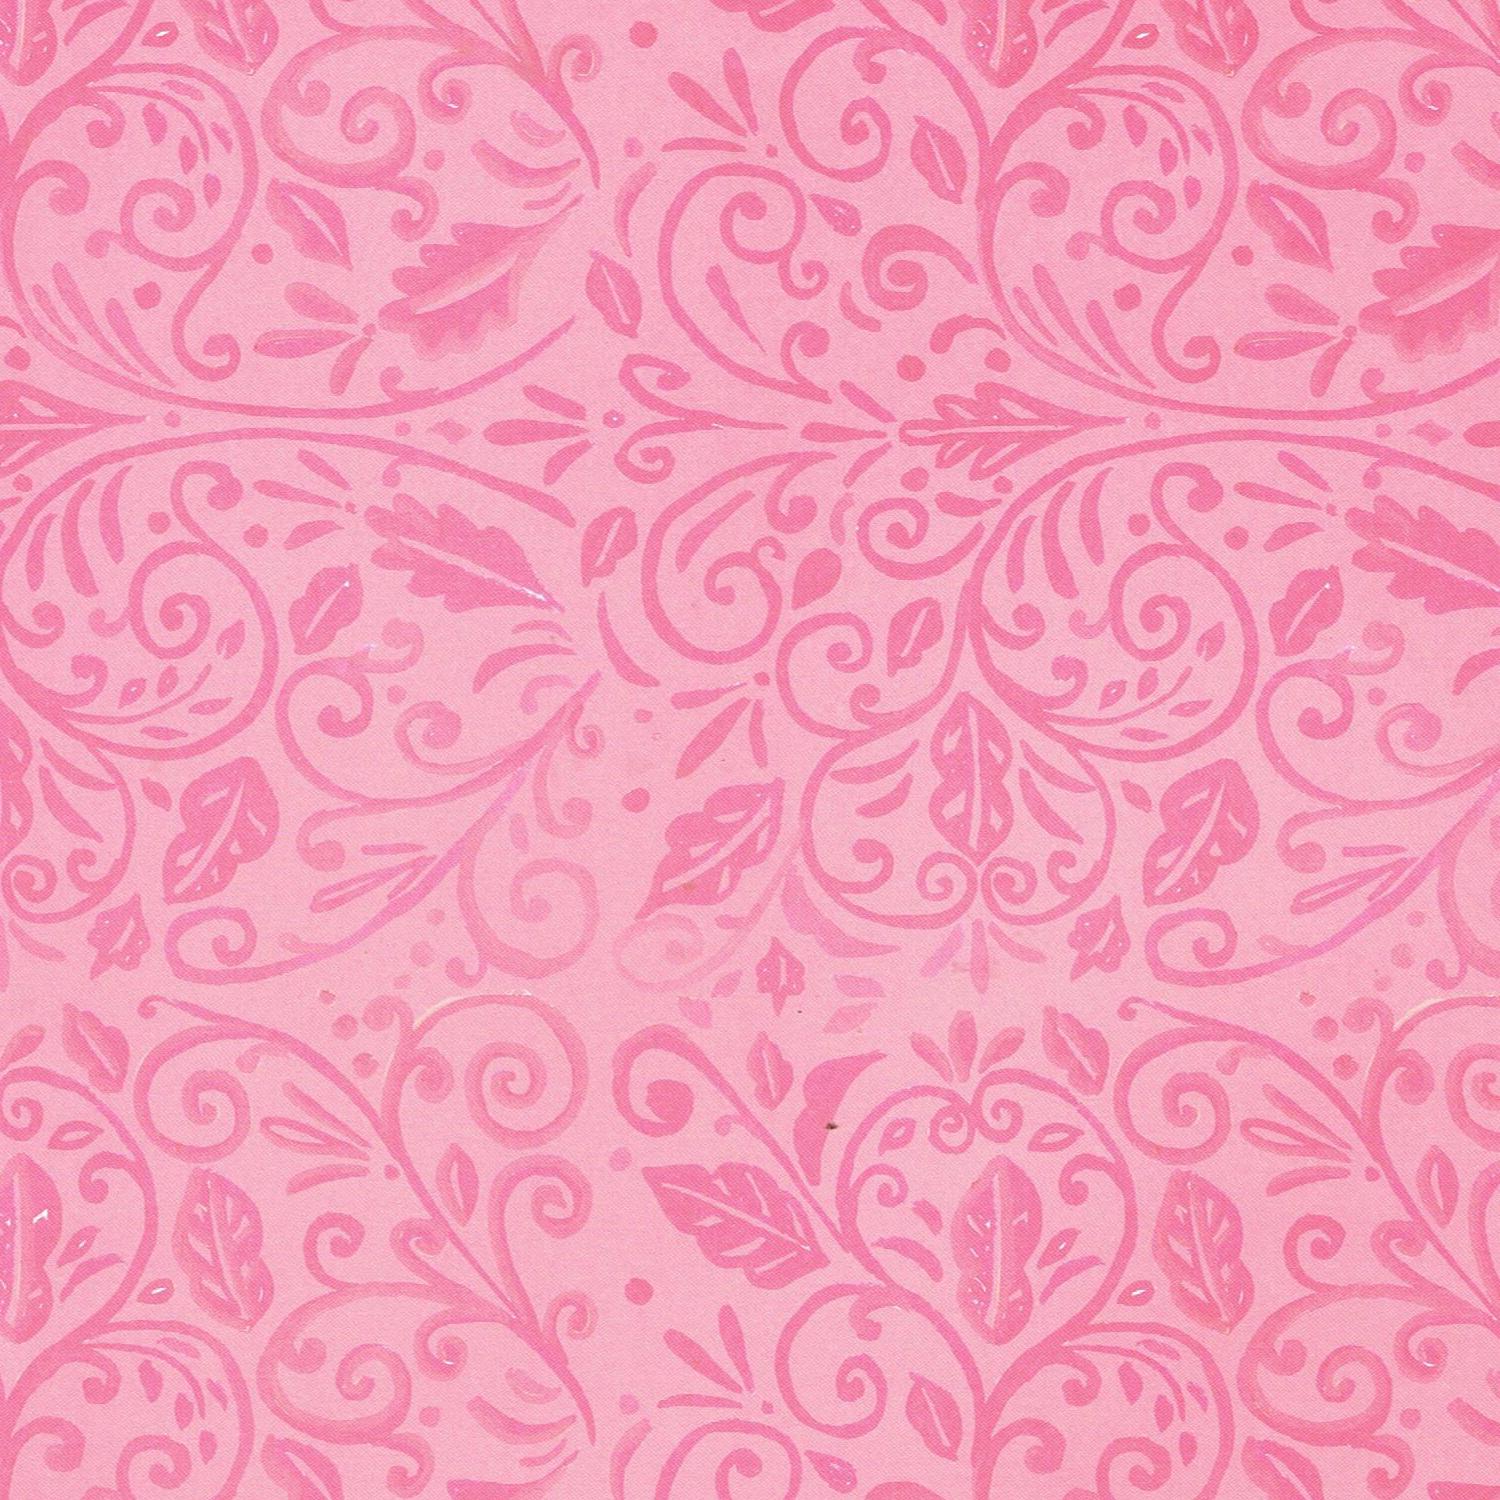 46+] Pink Pattern Wallpaper Background - WallpaperSafari